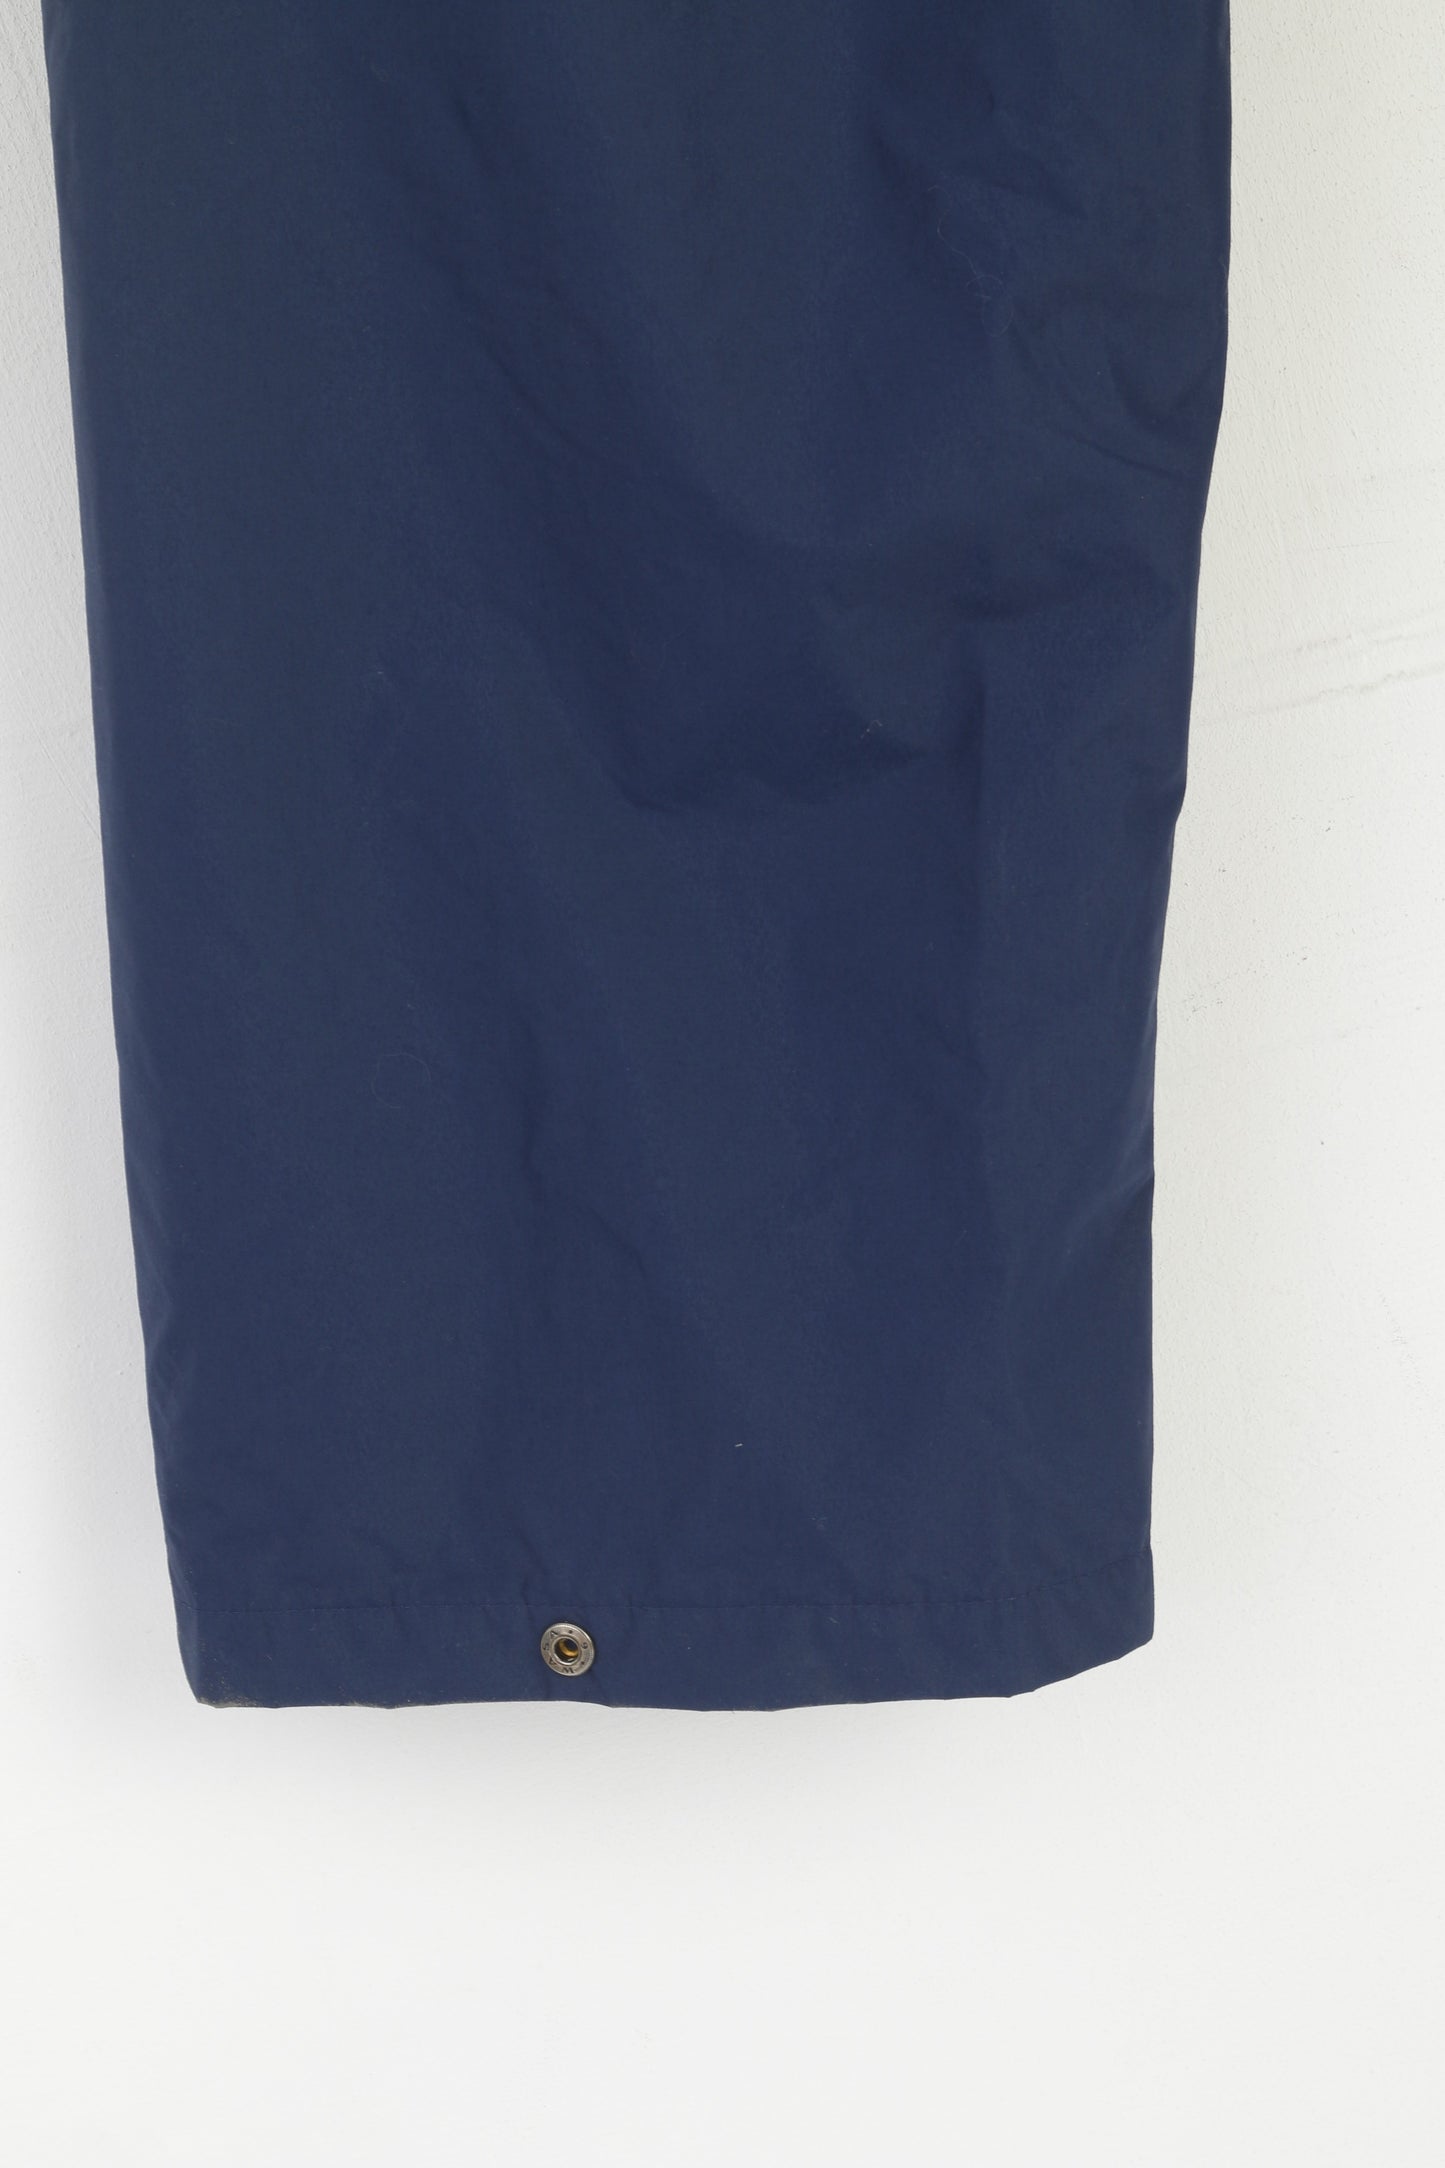 Helly Hansen Pantalon XL 58-60 pour homme Pantalon d'exercice imperméable en nylon bleu marine